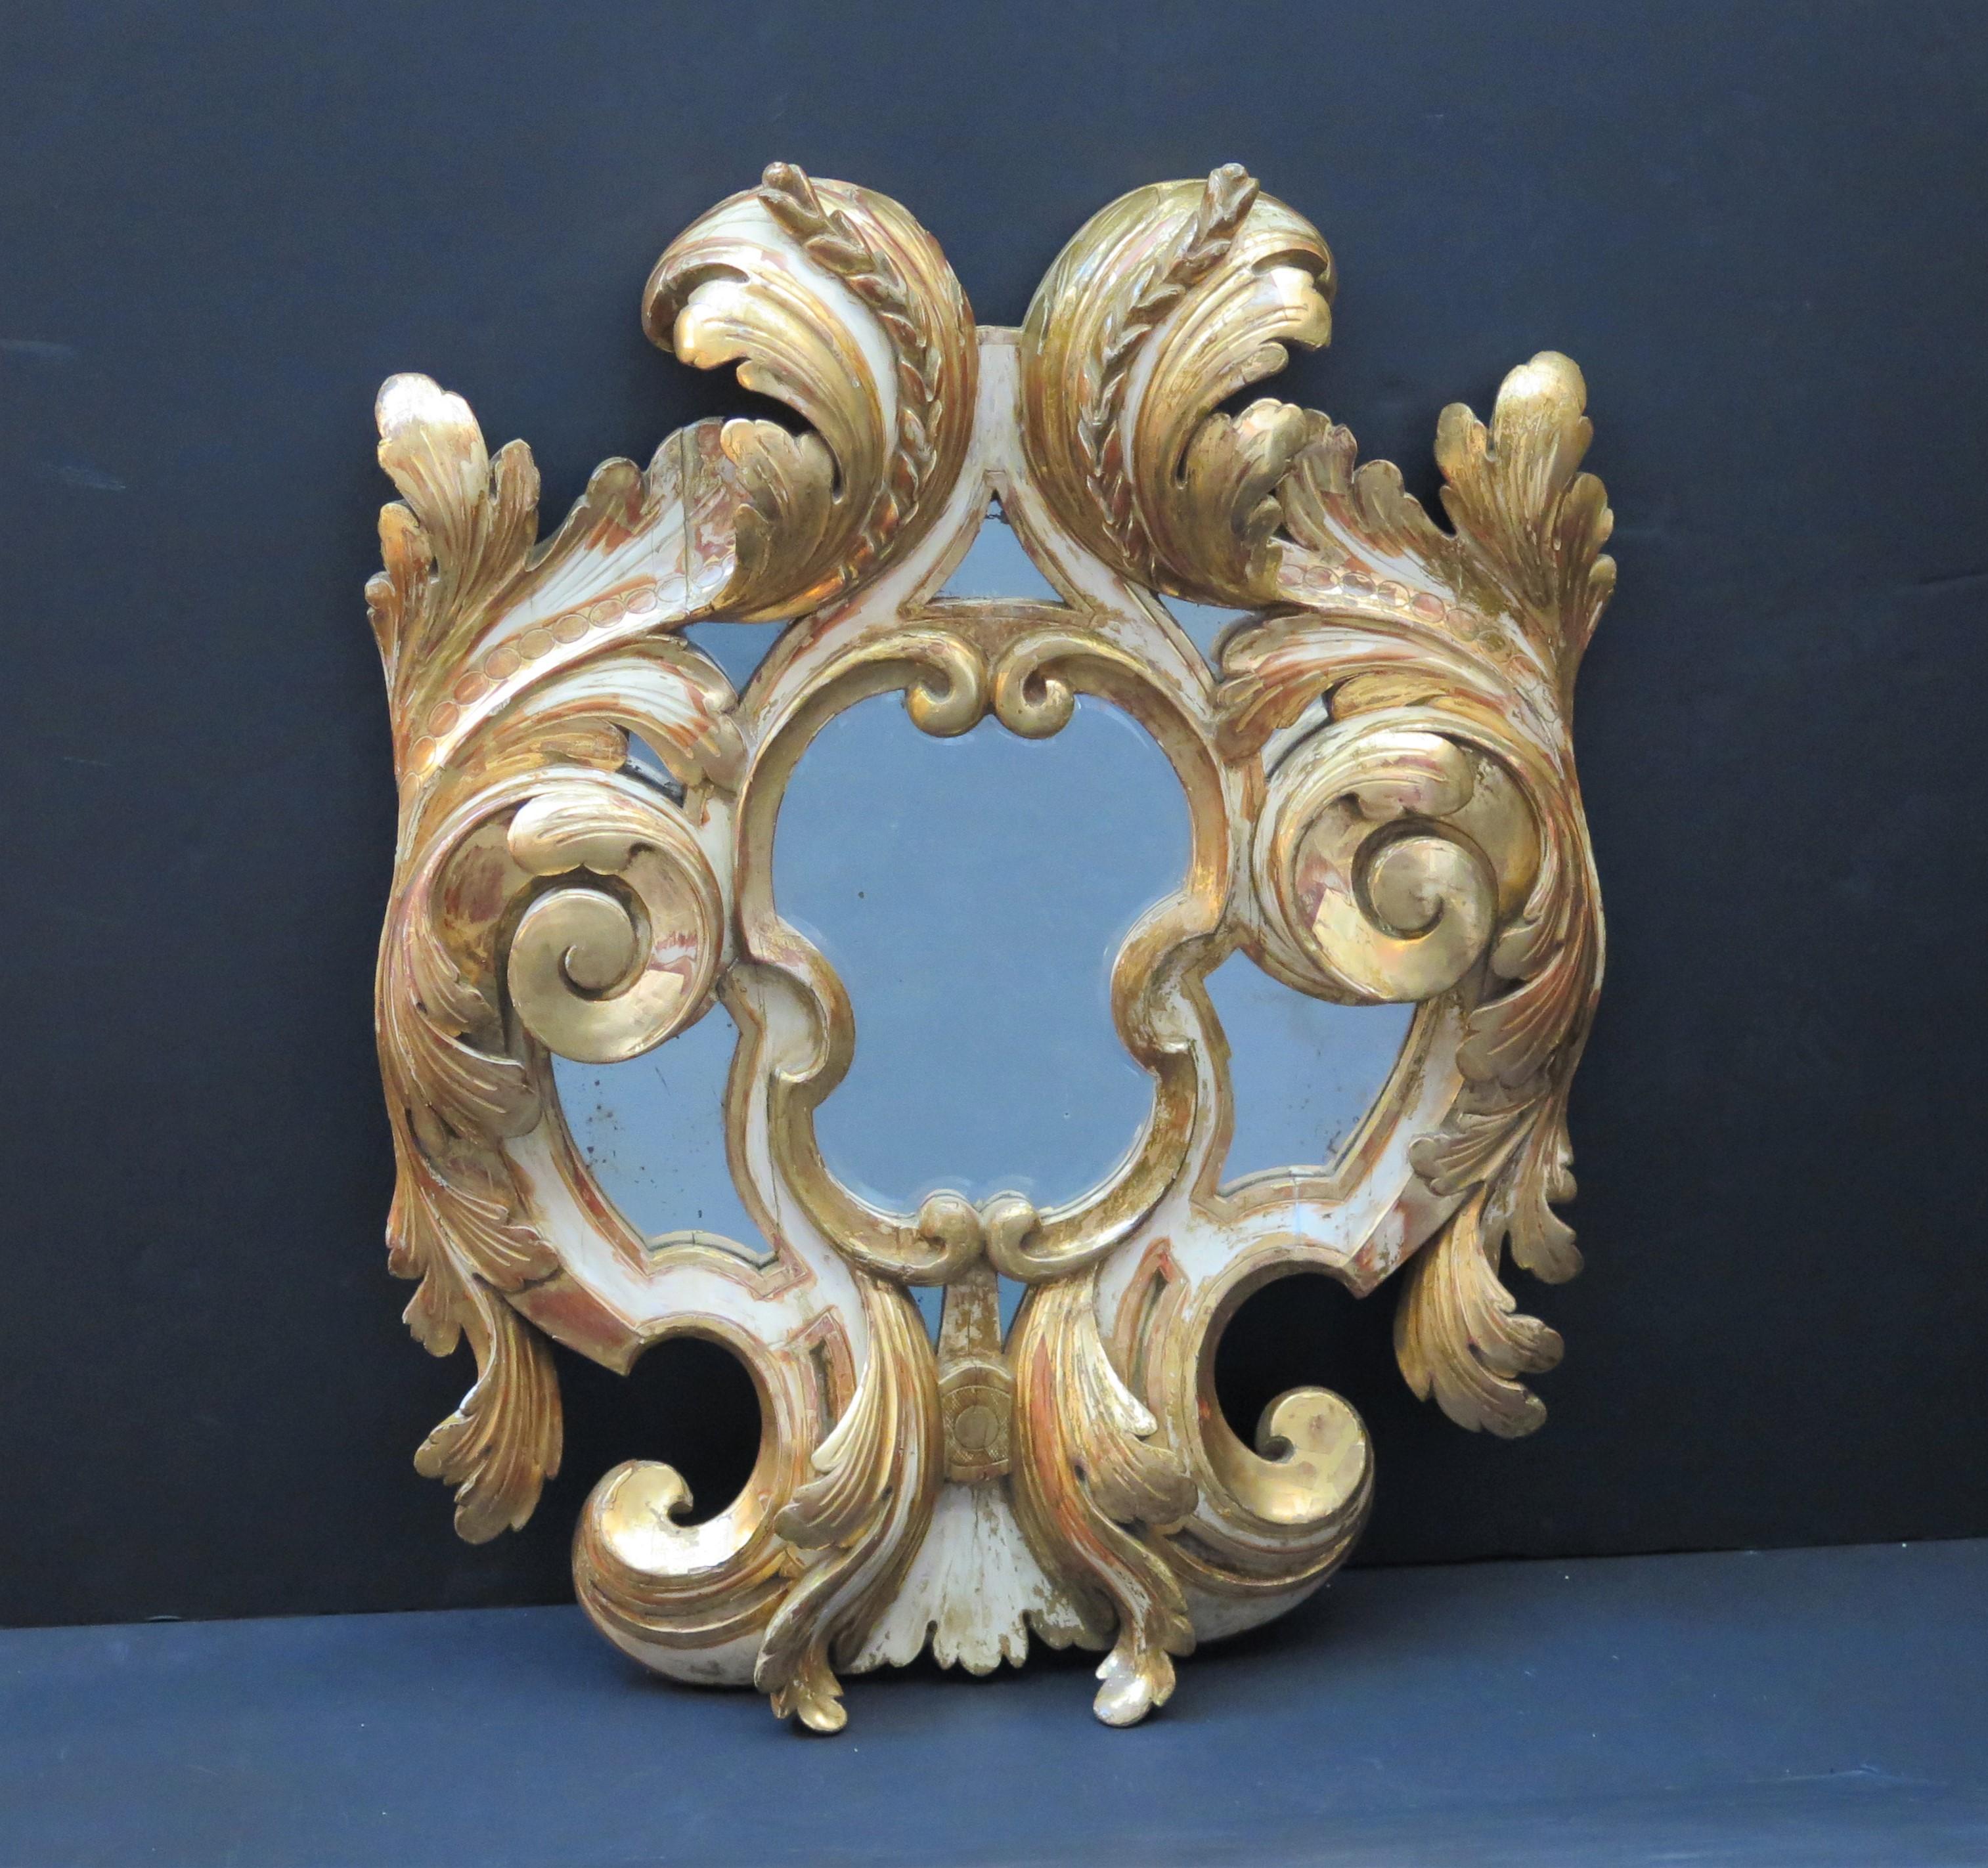 Miroir en bois doré peint et parcellisé de style baroque italien du 19e siècle, de grands feuillages à volutes centrent la plaque de miroir, flanquée de chaque côté de petites plaques de miroir plates.